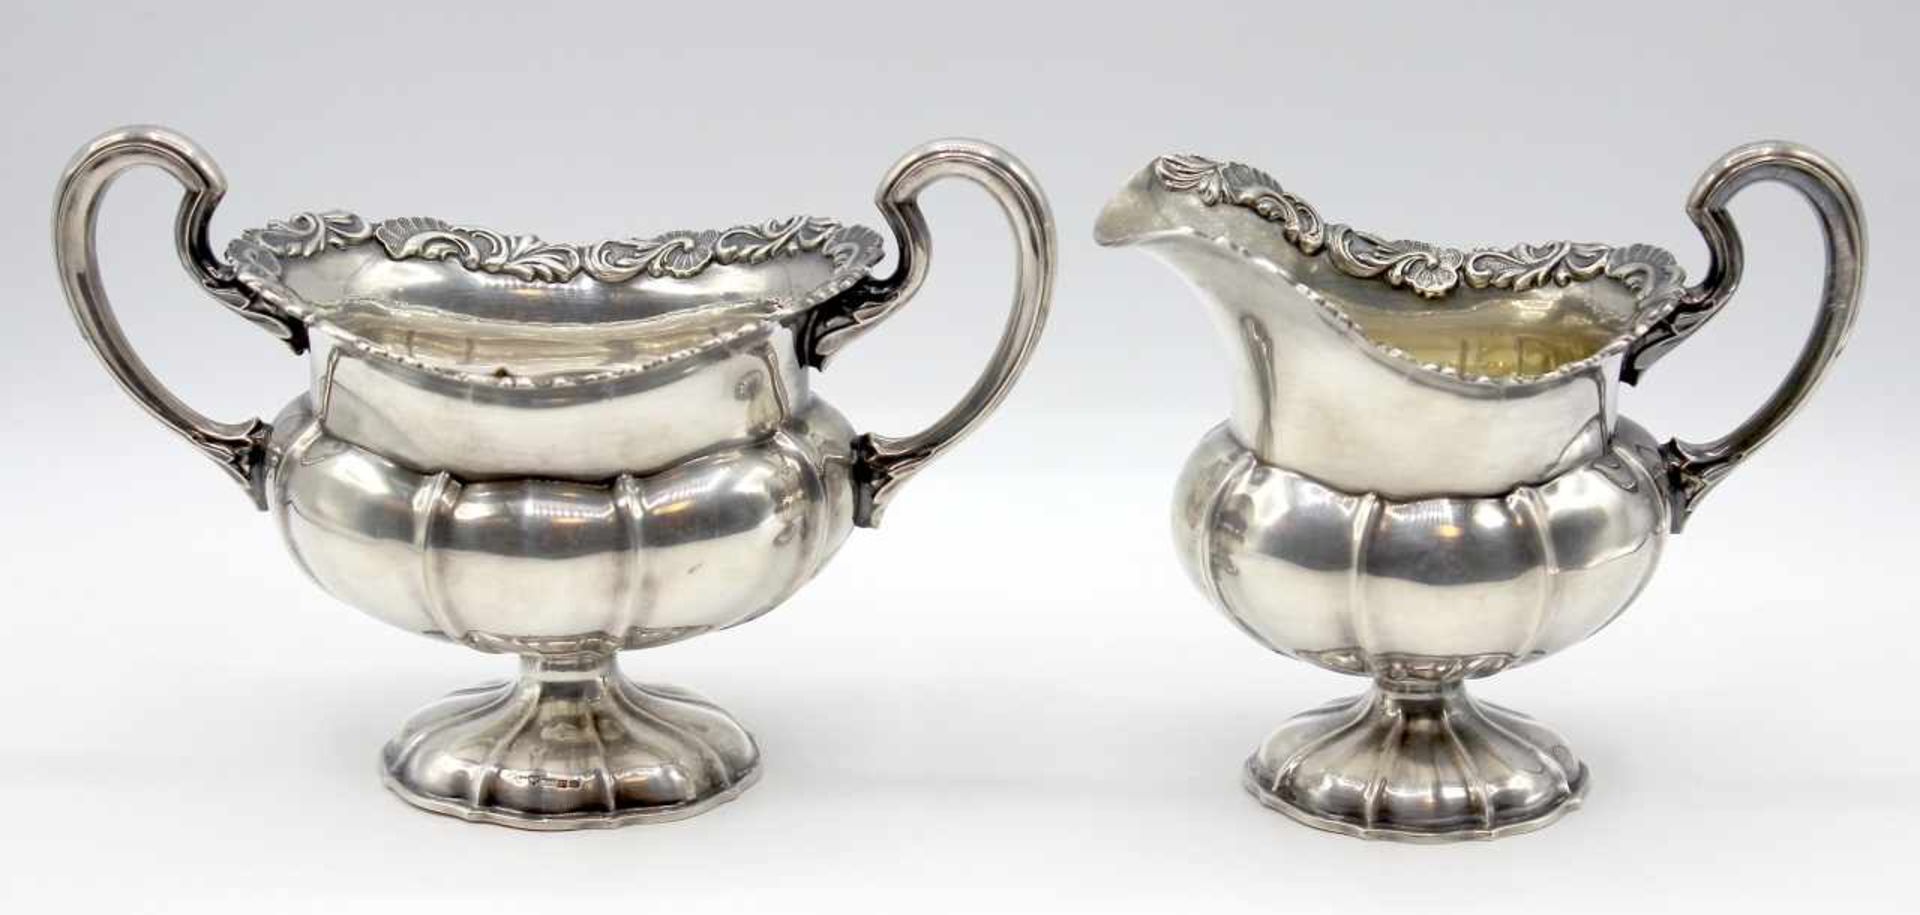 Zucker und Milch - wohl England um 1900 Sterling Silber, verziert mit Rocaillen und Blattwerk,